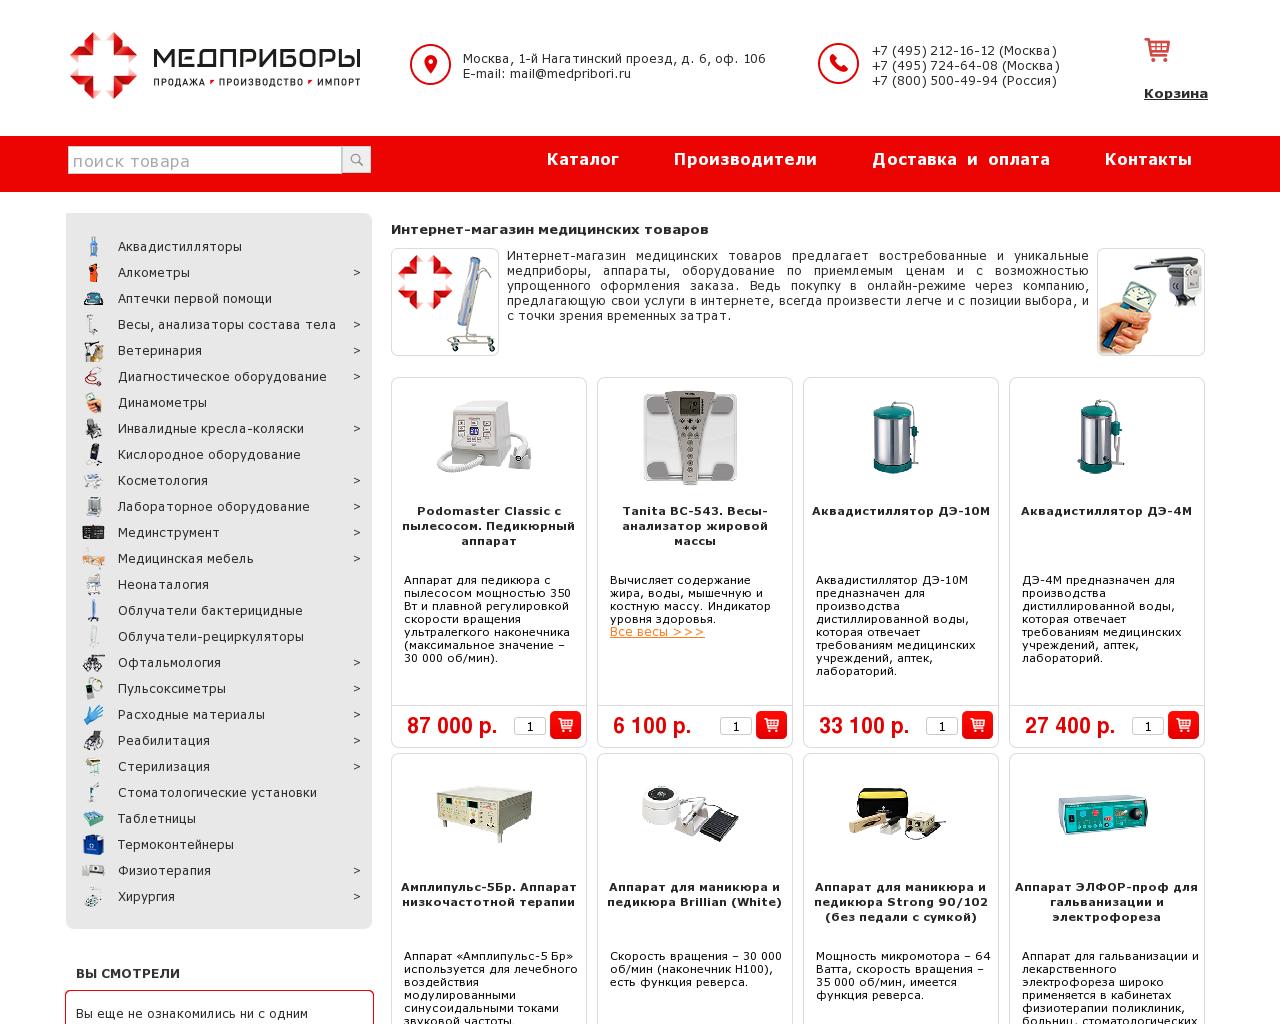 Изображение сайта medpribori.ru в разрешении 1280x1024